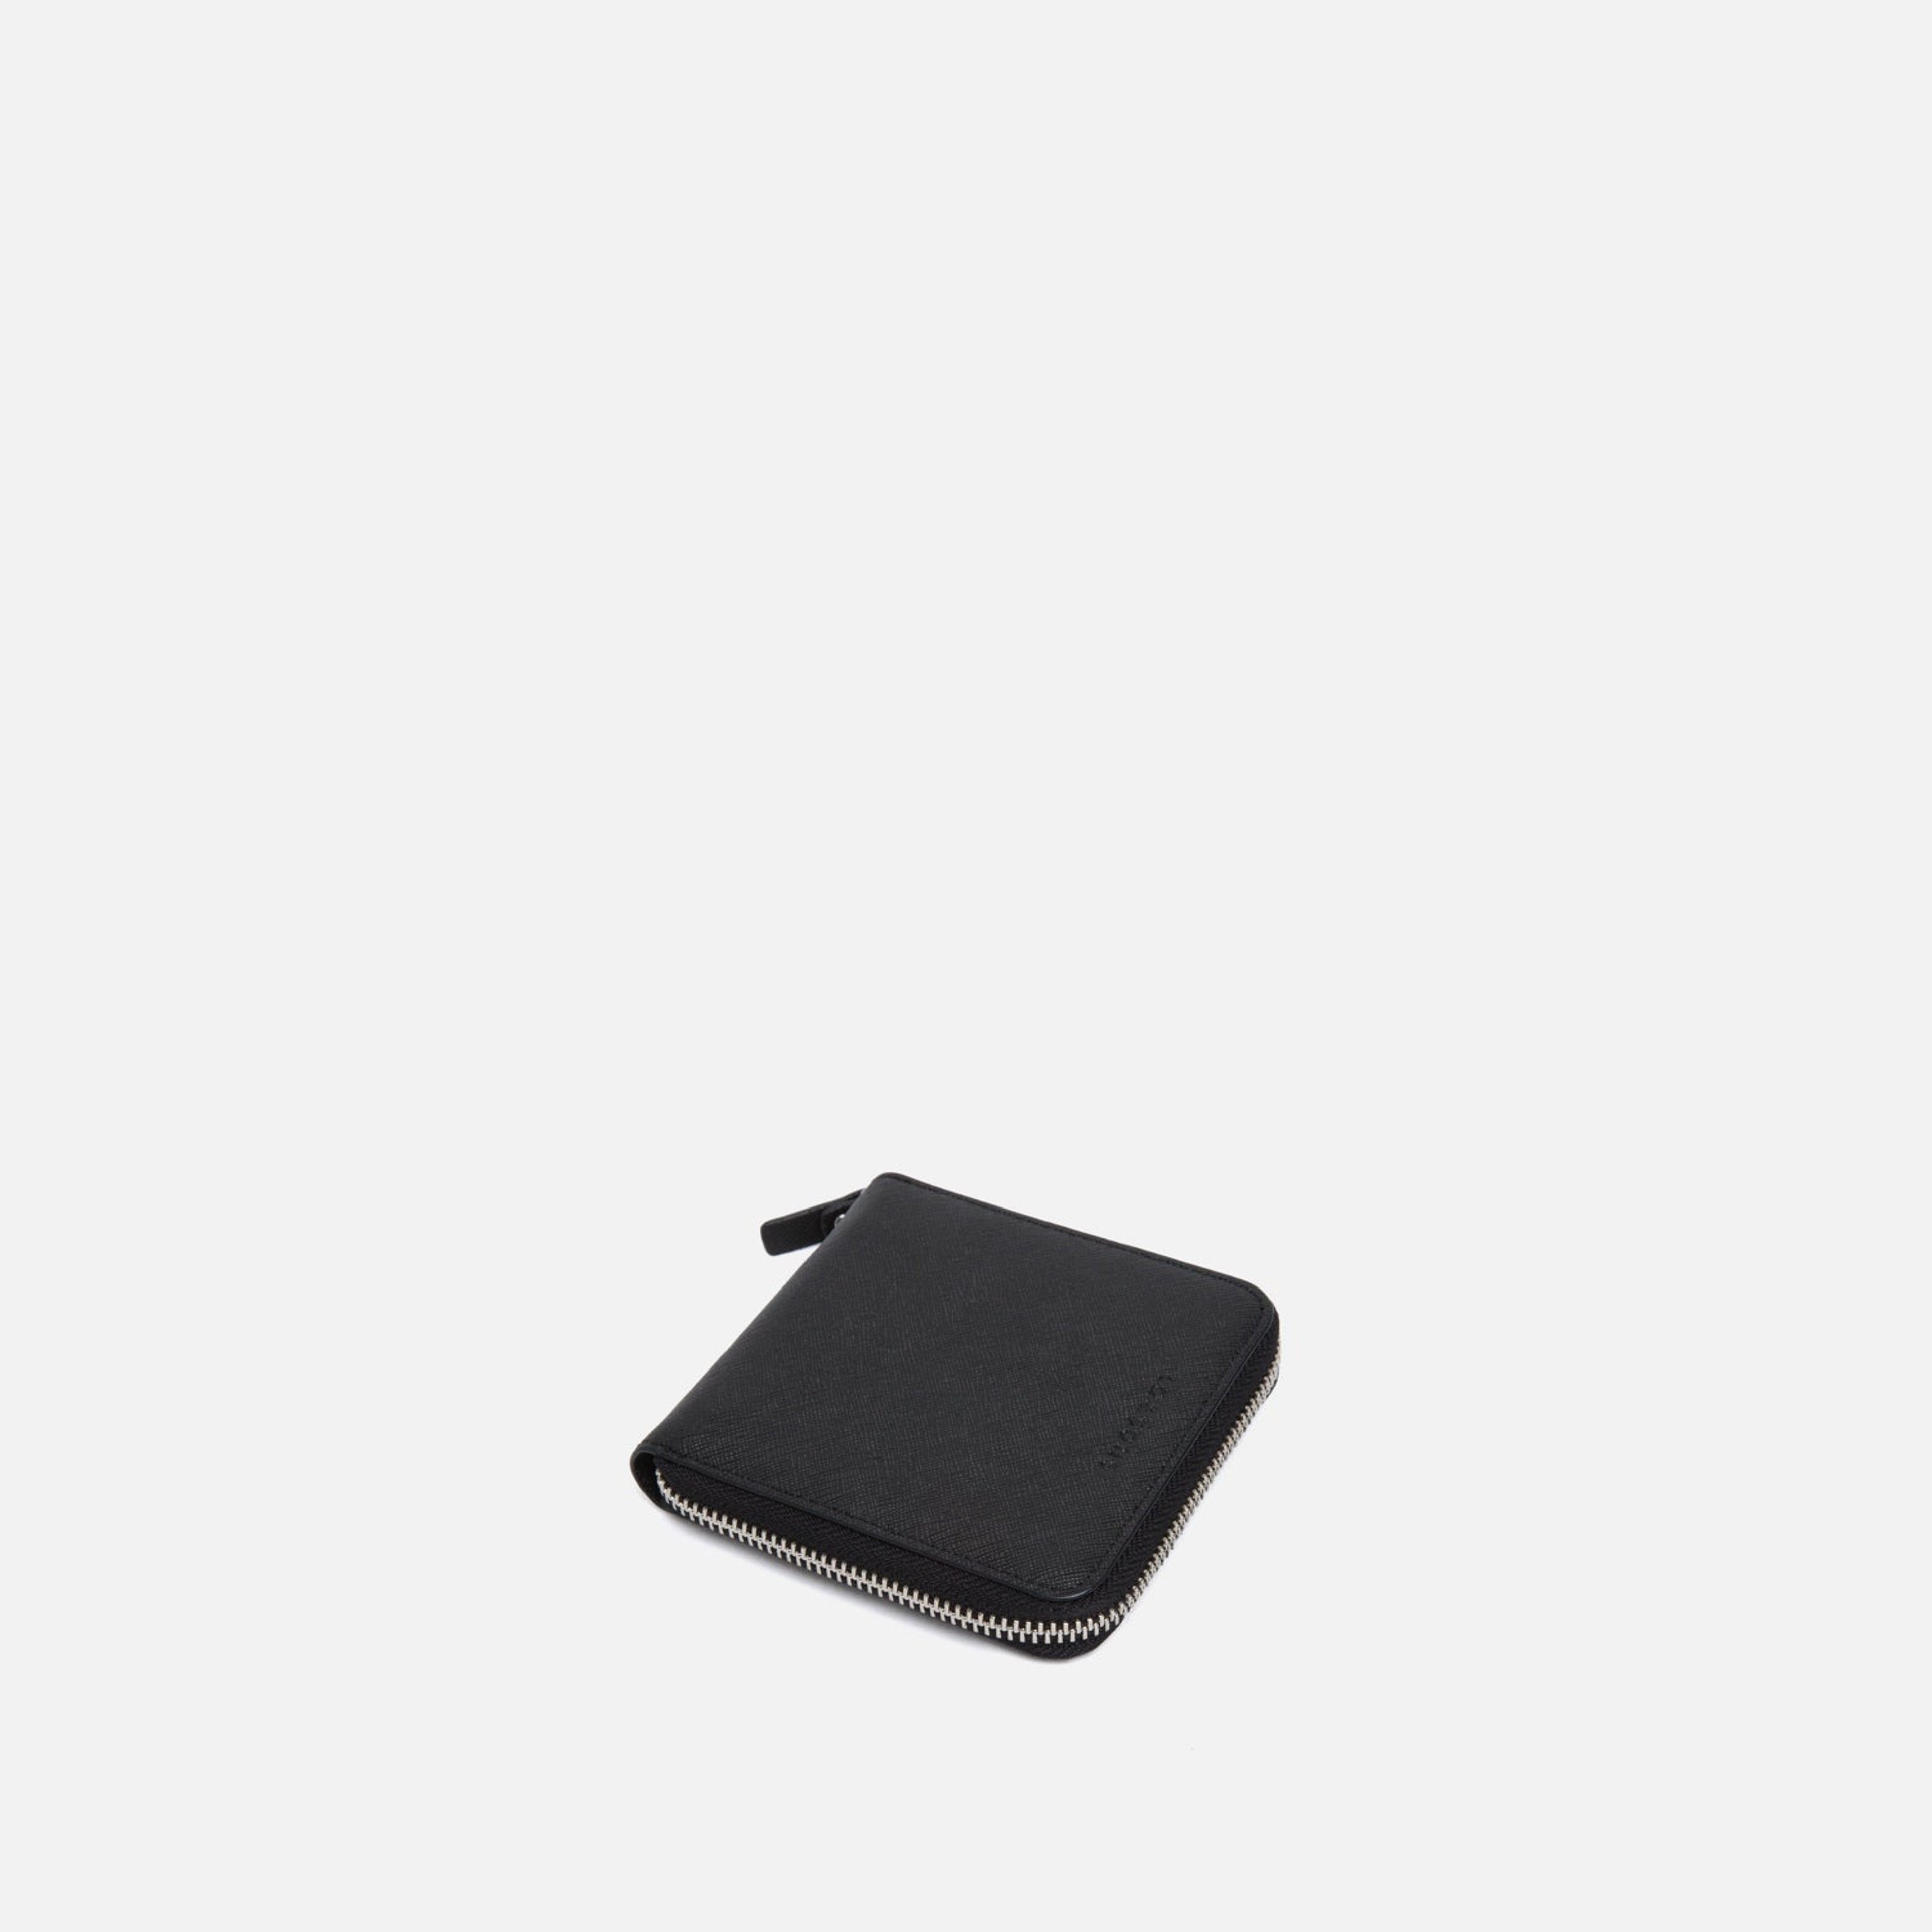 Mallorca Small Wallet - Saffiano Leather - Black / Silver / Grey